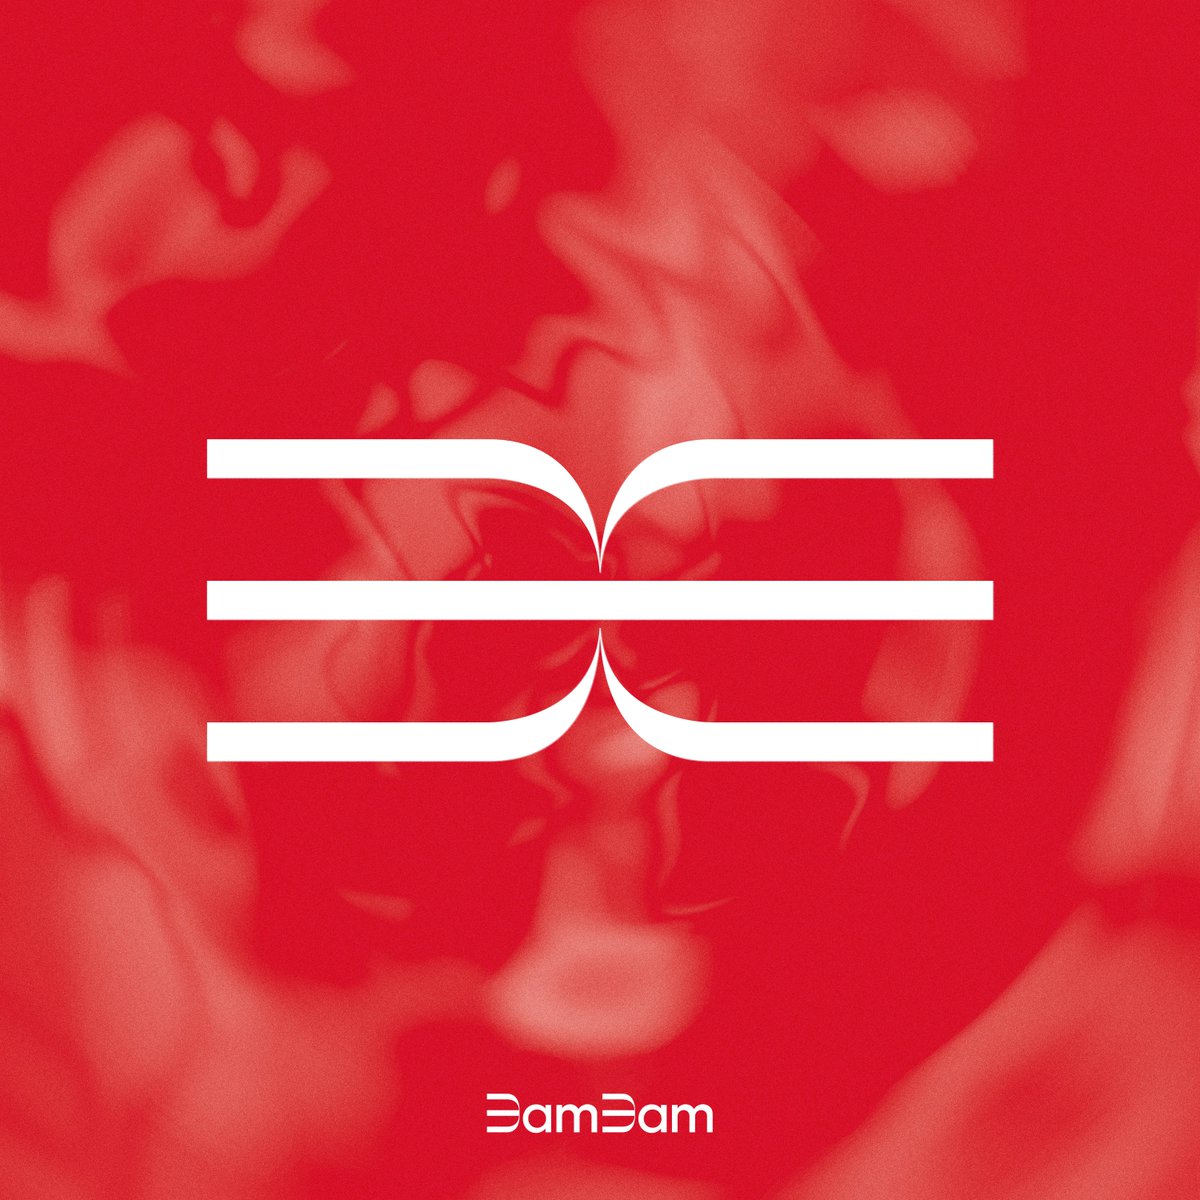 뱀뱀 (BamBam) 1st Full Album [Sour & Sweet] Digital Cover 🎧 2023.03.28 TUE 6PM KST #뱀뱀 #BamBam #SourandSweet